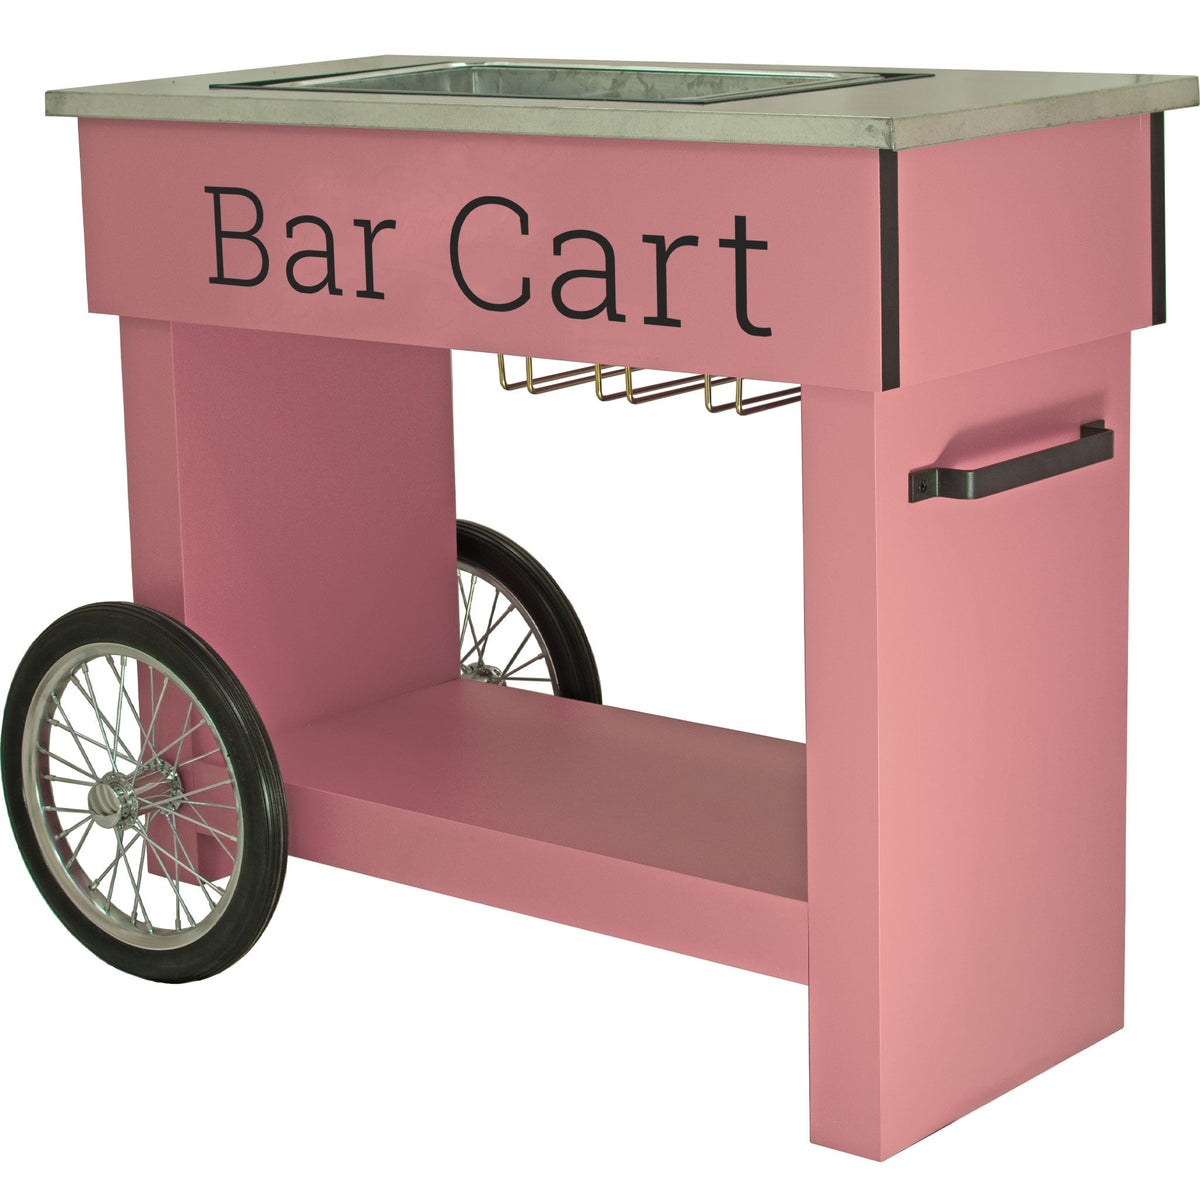 Champagne & Wine Bar Cart